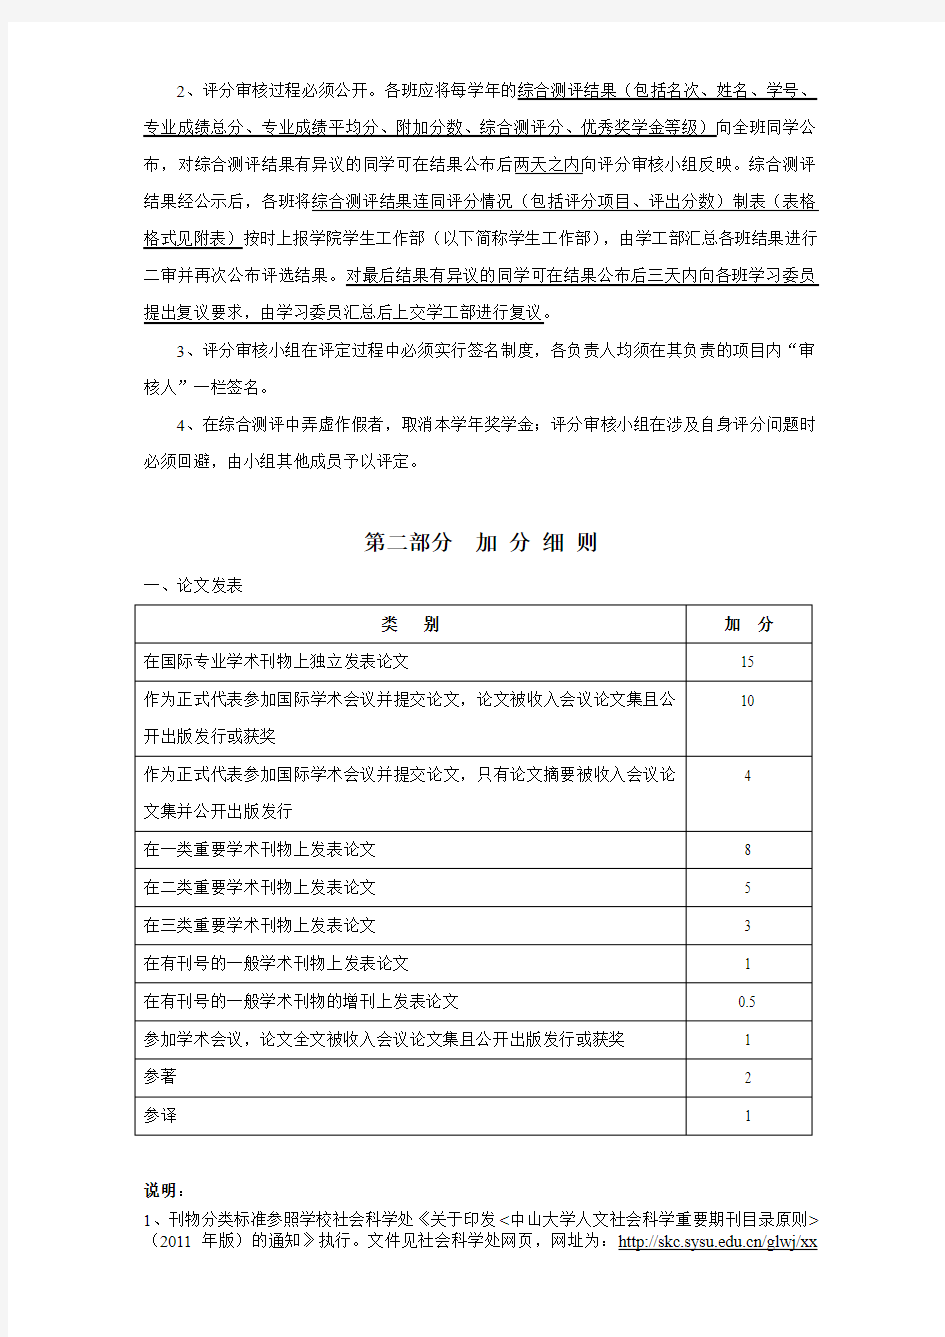 中山大学法学院年本科生综合测评方案(2017年版)